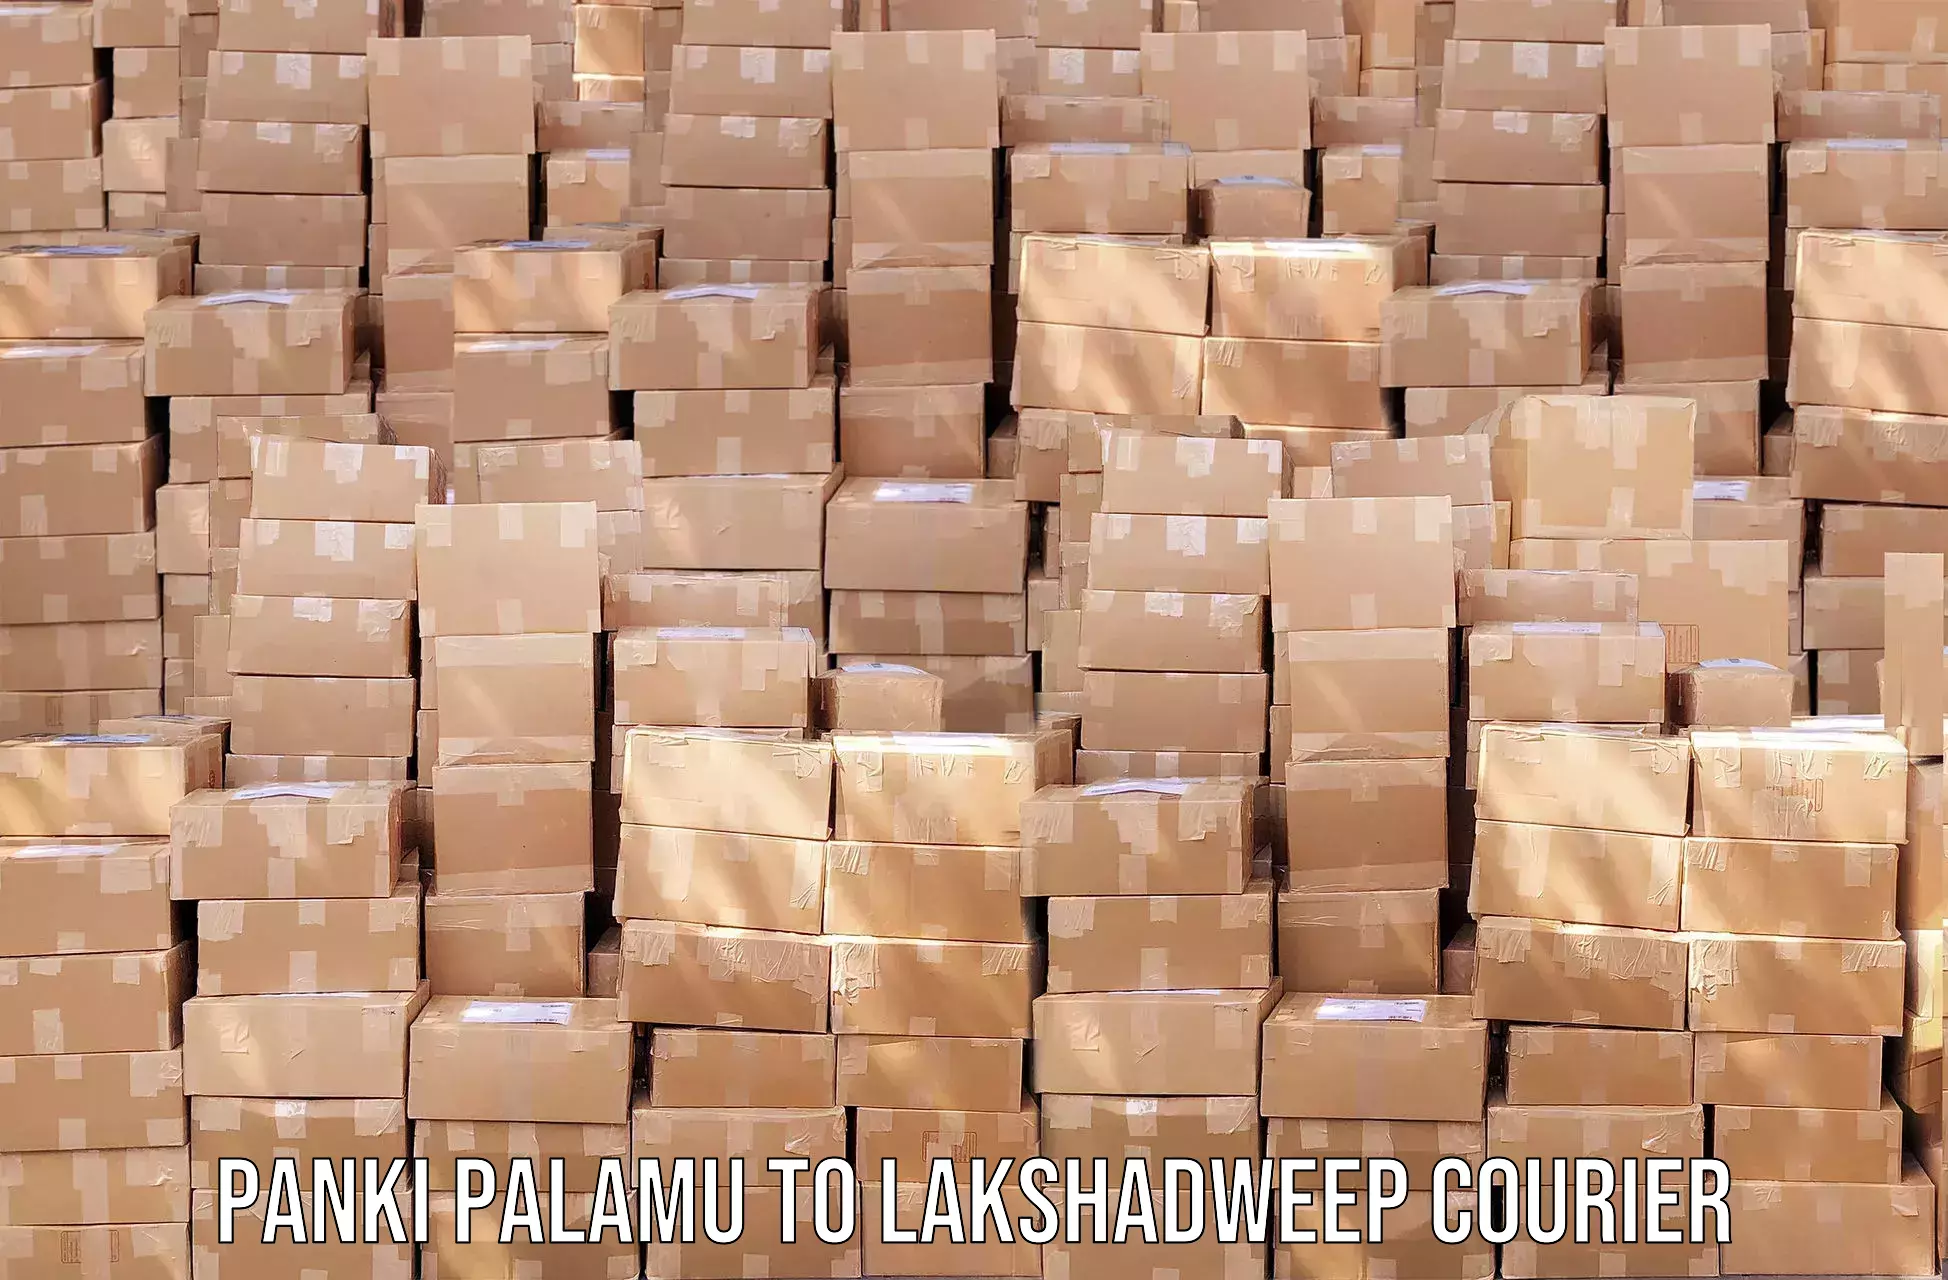 Ocean freight courier Panki Palamu to Lakshadweep